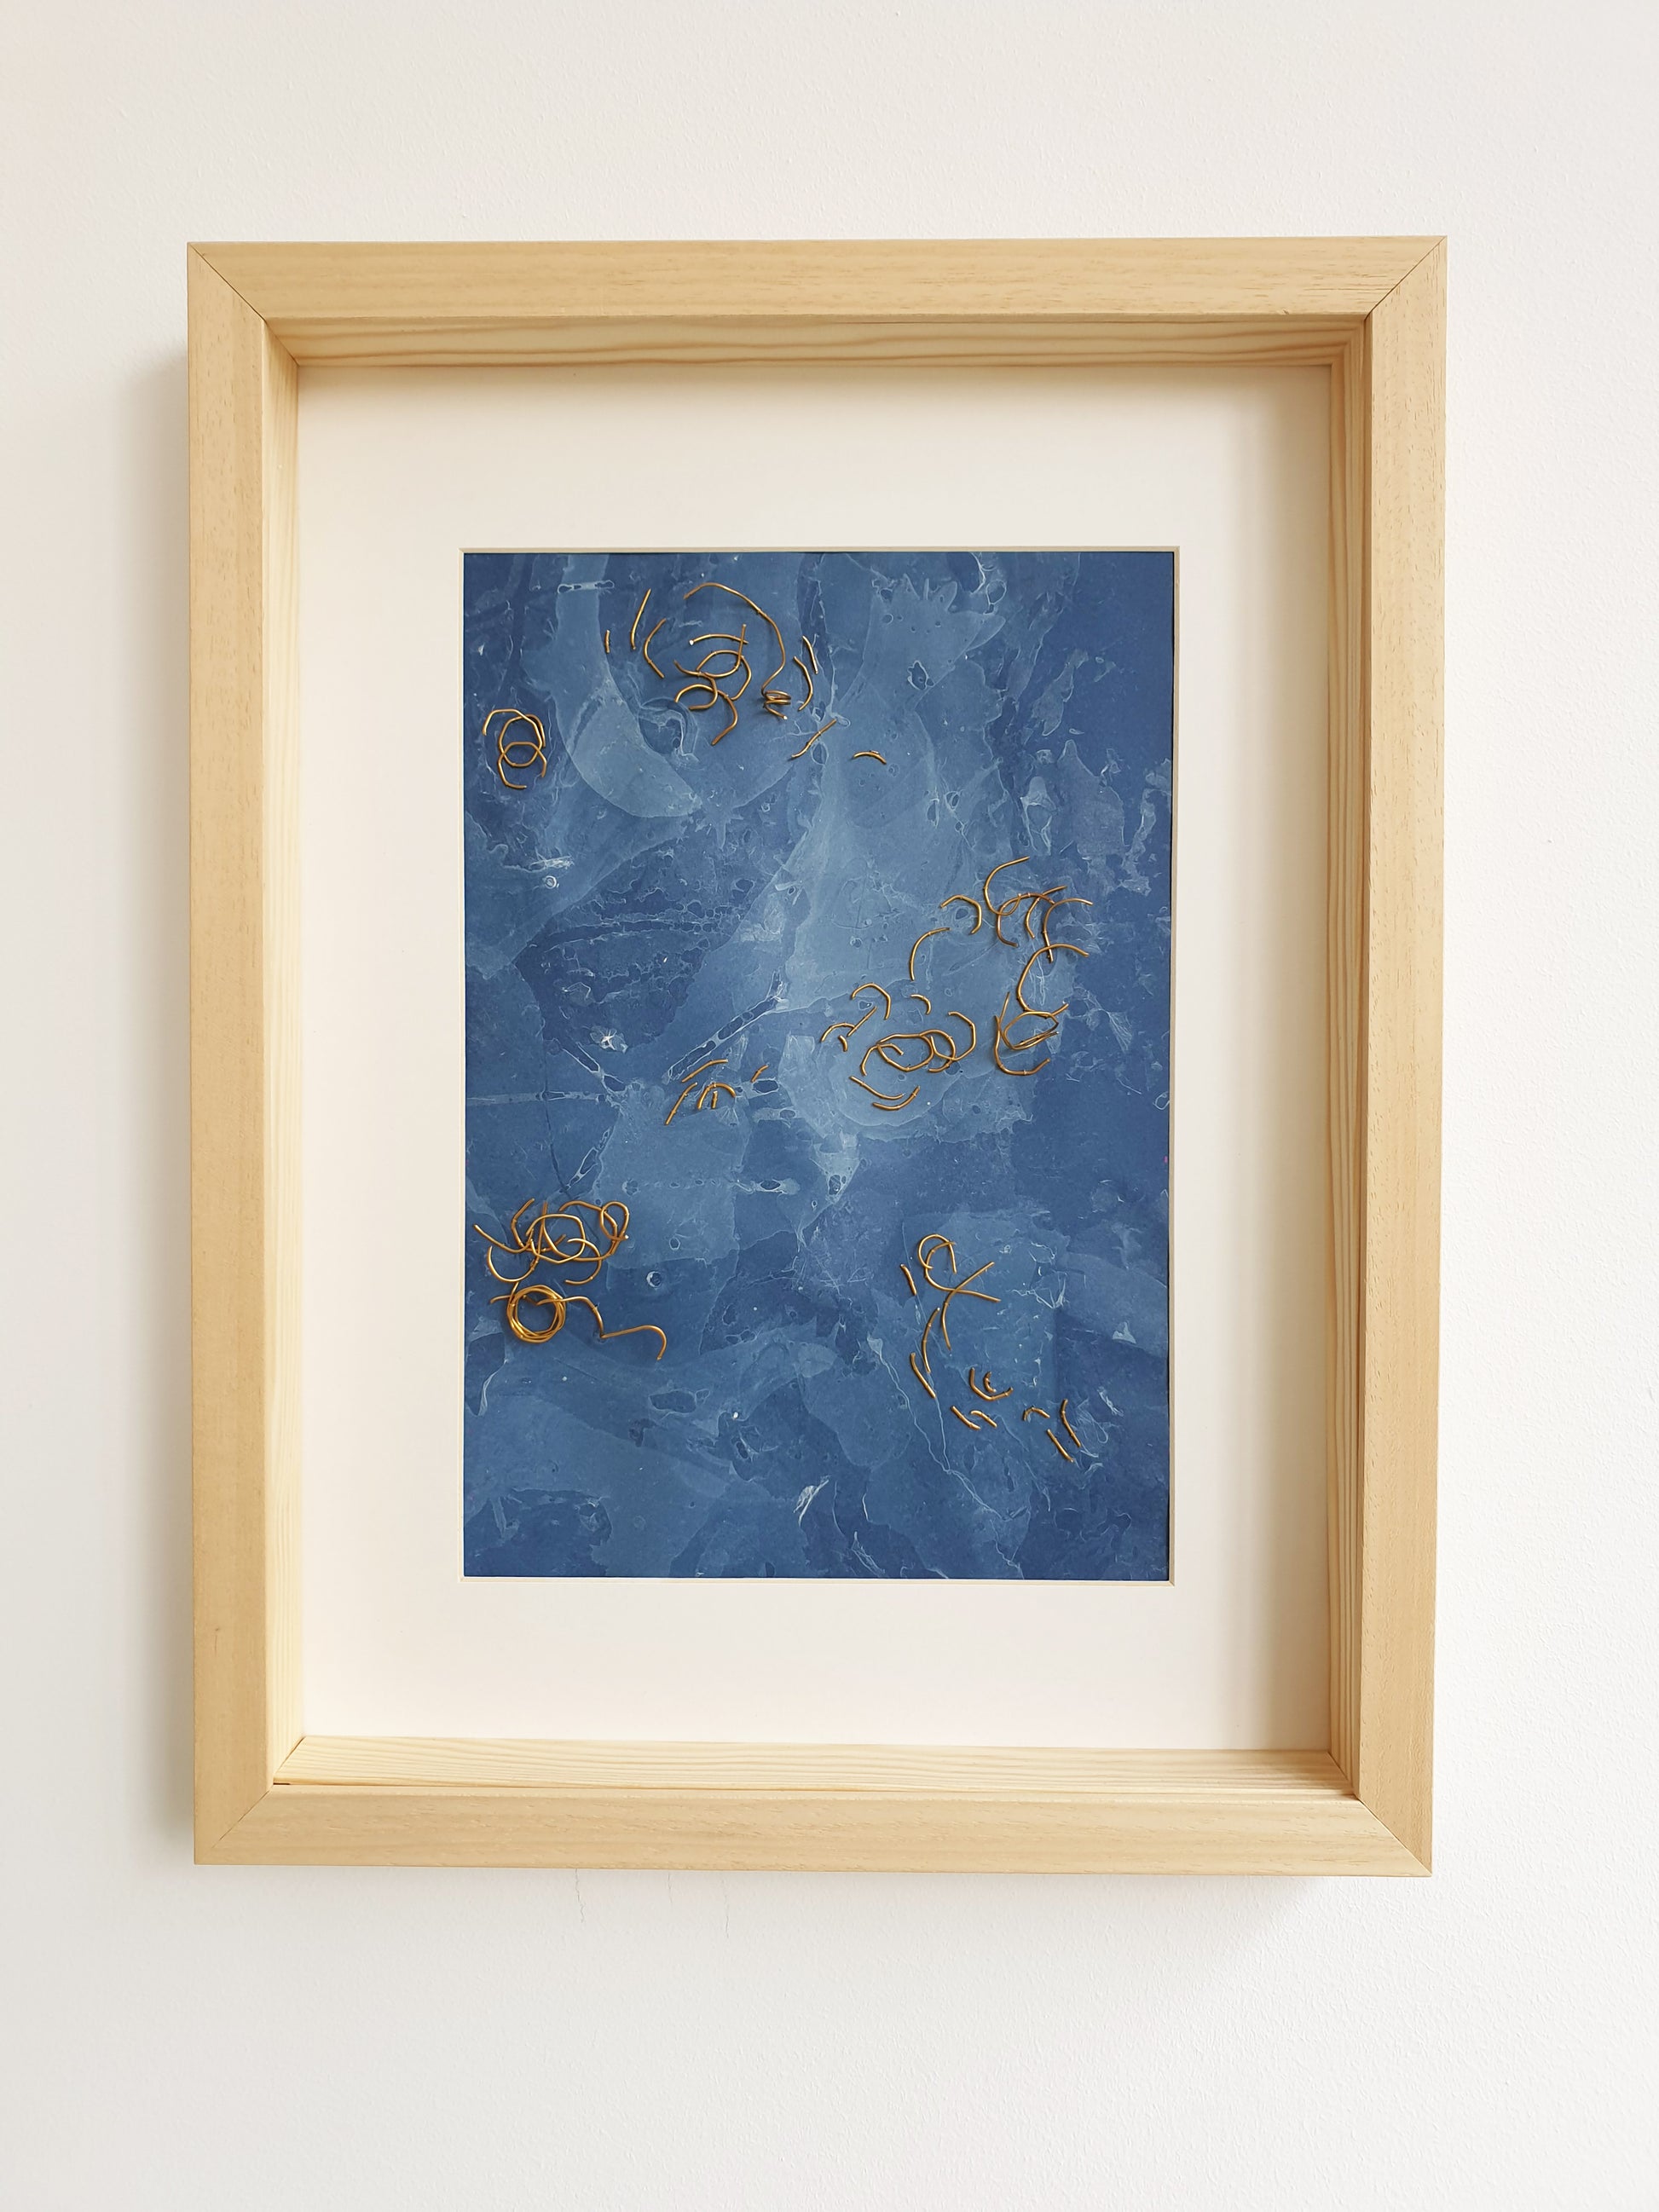 Visuel de l'oeuvre nommée Eaux Libres encadrée. Papier marbré de ton bleue, brodée main avec des fragments de laiton.